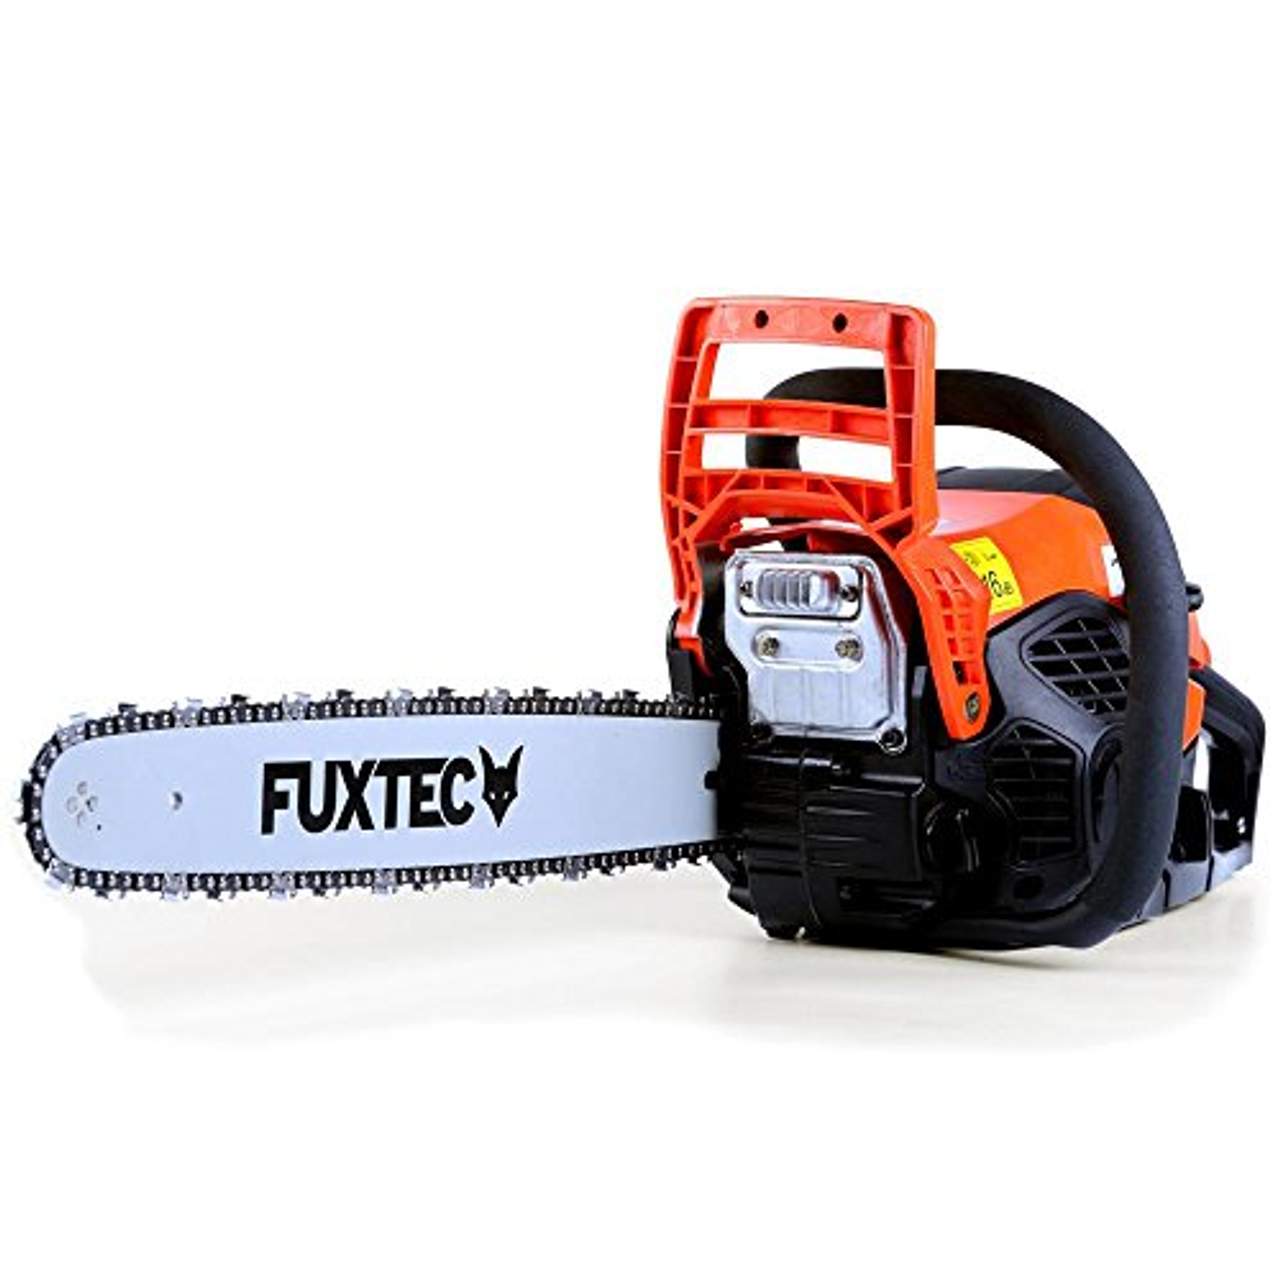 Fuxtec  FX-KSP155 